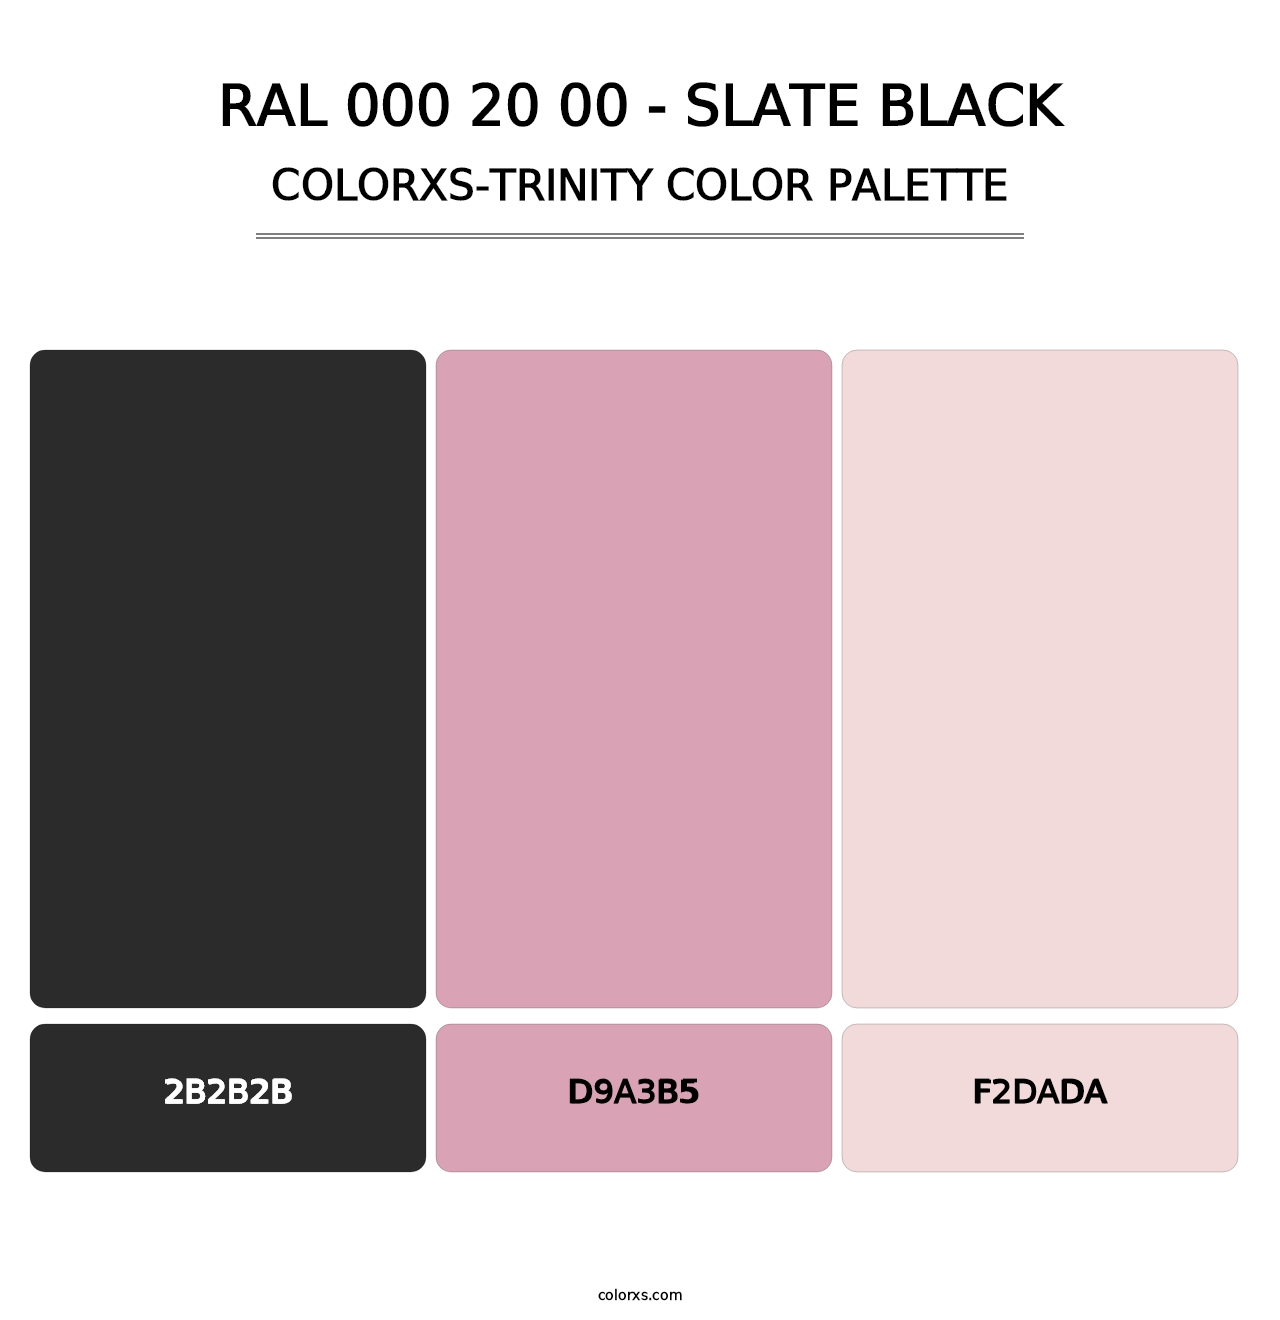 RAL 000 20 00 - Slate Black - Colorxs Trinity Palette